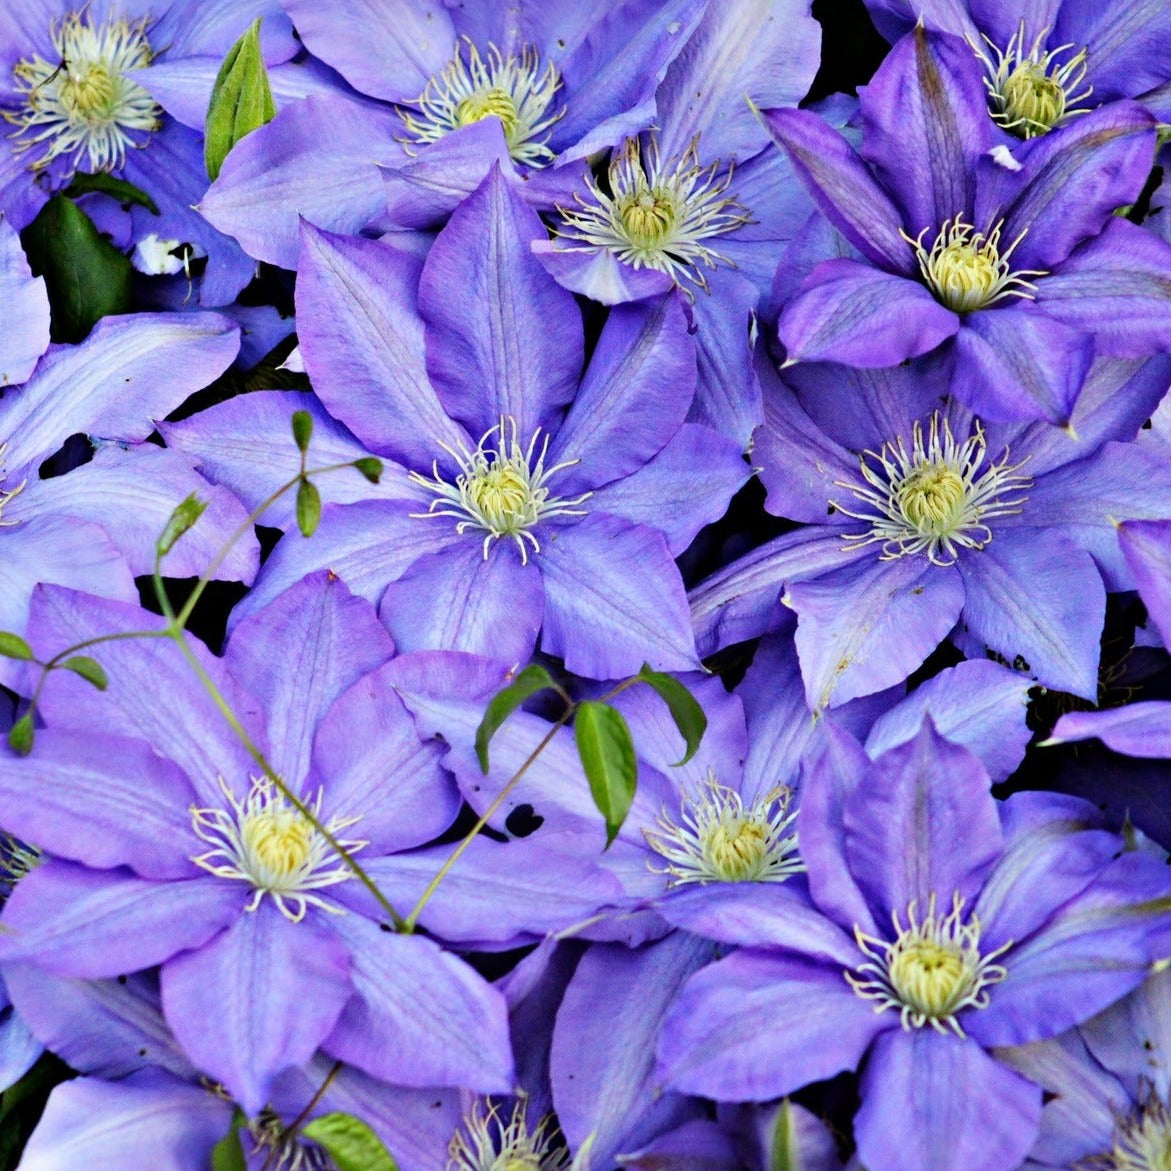 Blå klematis (Clematis Multi Blue) har flotte mørkeblå blomster med hvid stribe midt i de enkelte kronblade massere og massere af blomster